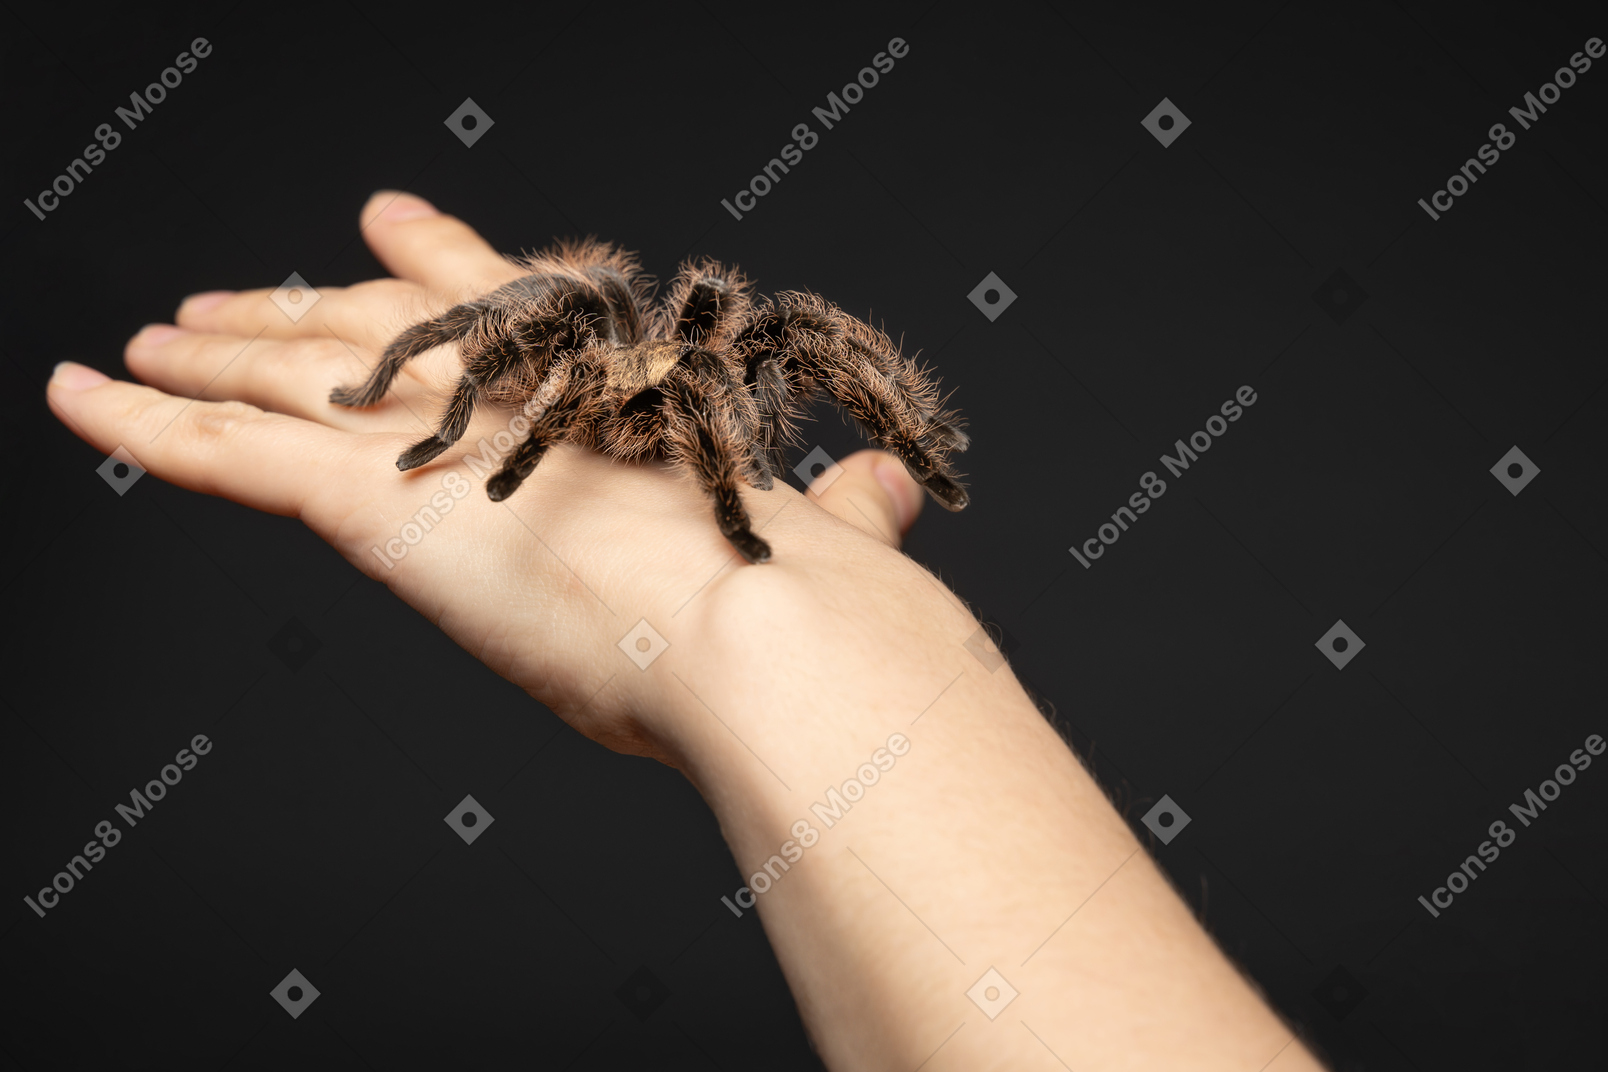 Big tarantula creeping on human hand